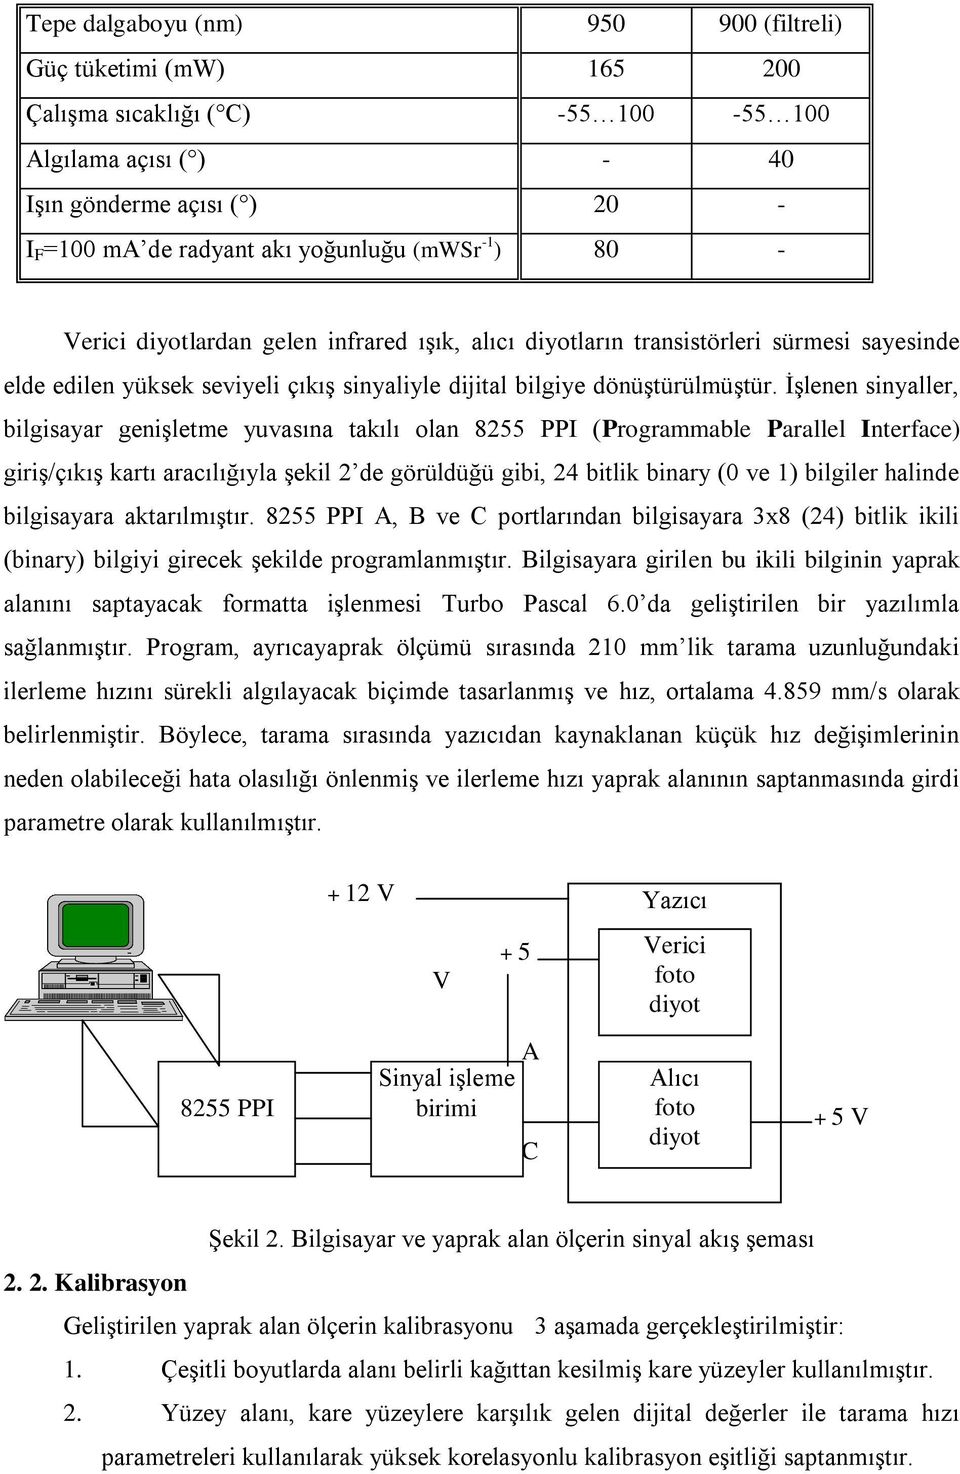 İşlenen sinyaller, bilgisayar genişletme yuvasına takılı olan 8255 PPI (Programmable Parallel Interface) giriş/çıkış kartı aracılığıyla şekil 2 de görüldüğü gibi, 24 bitlik binary (0 ve 1) bilgiler